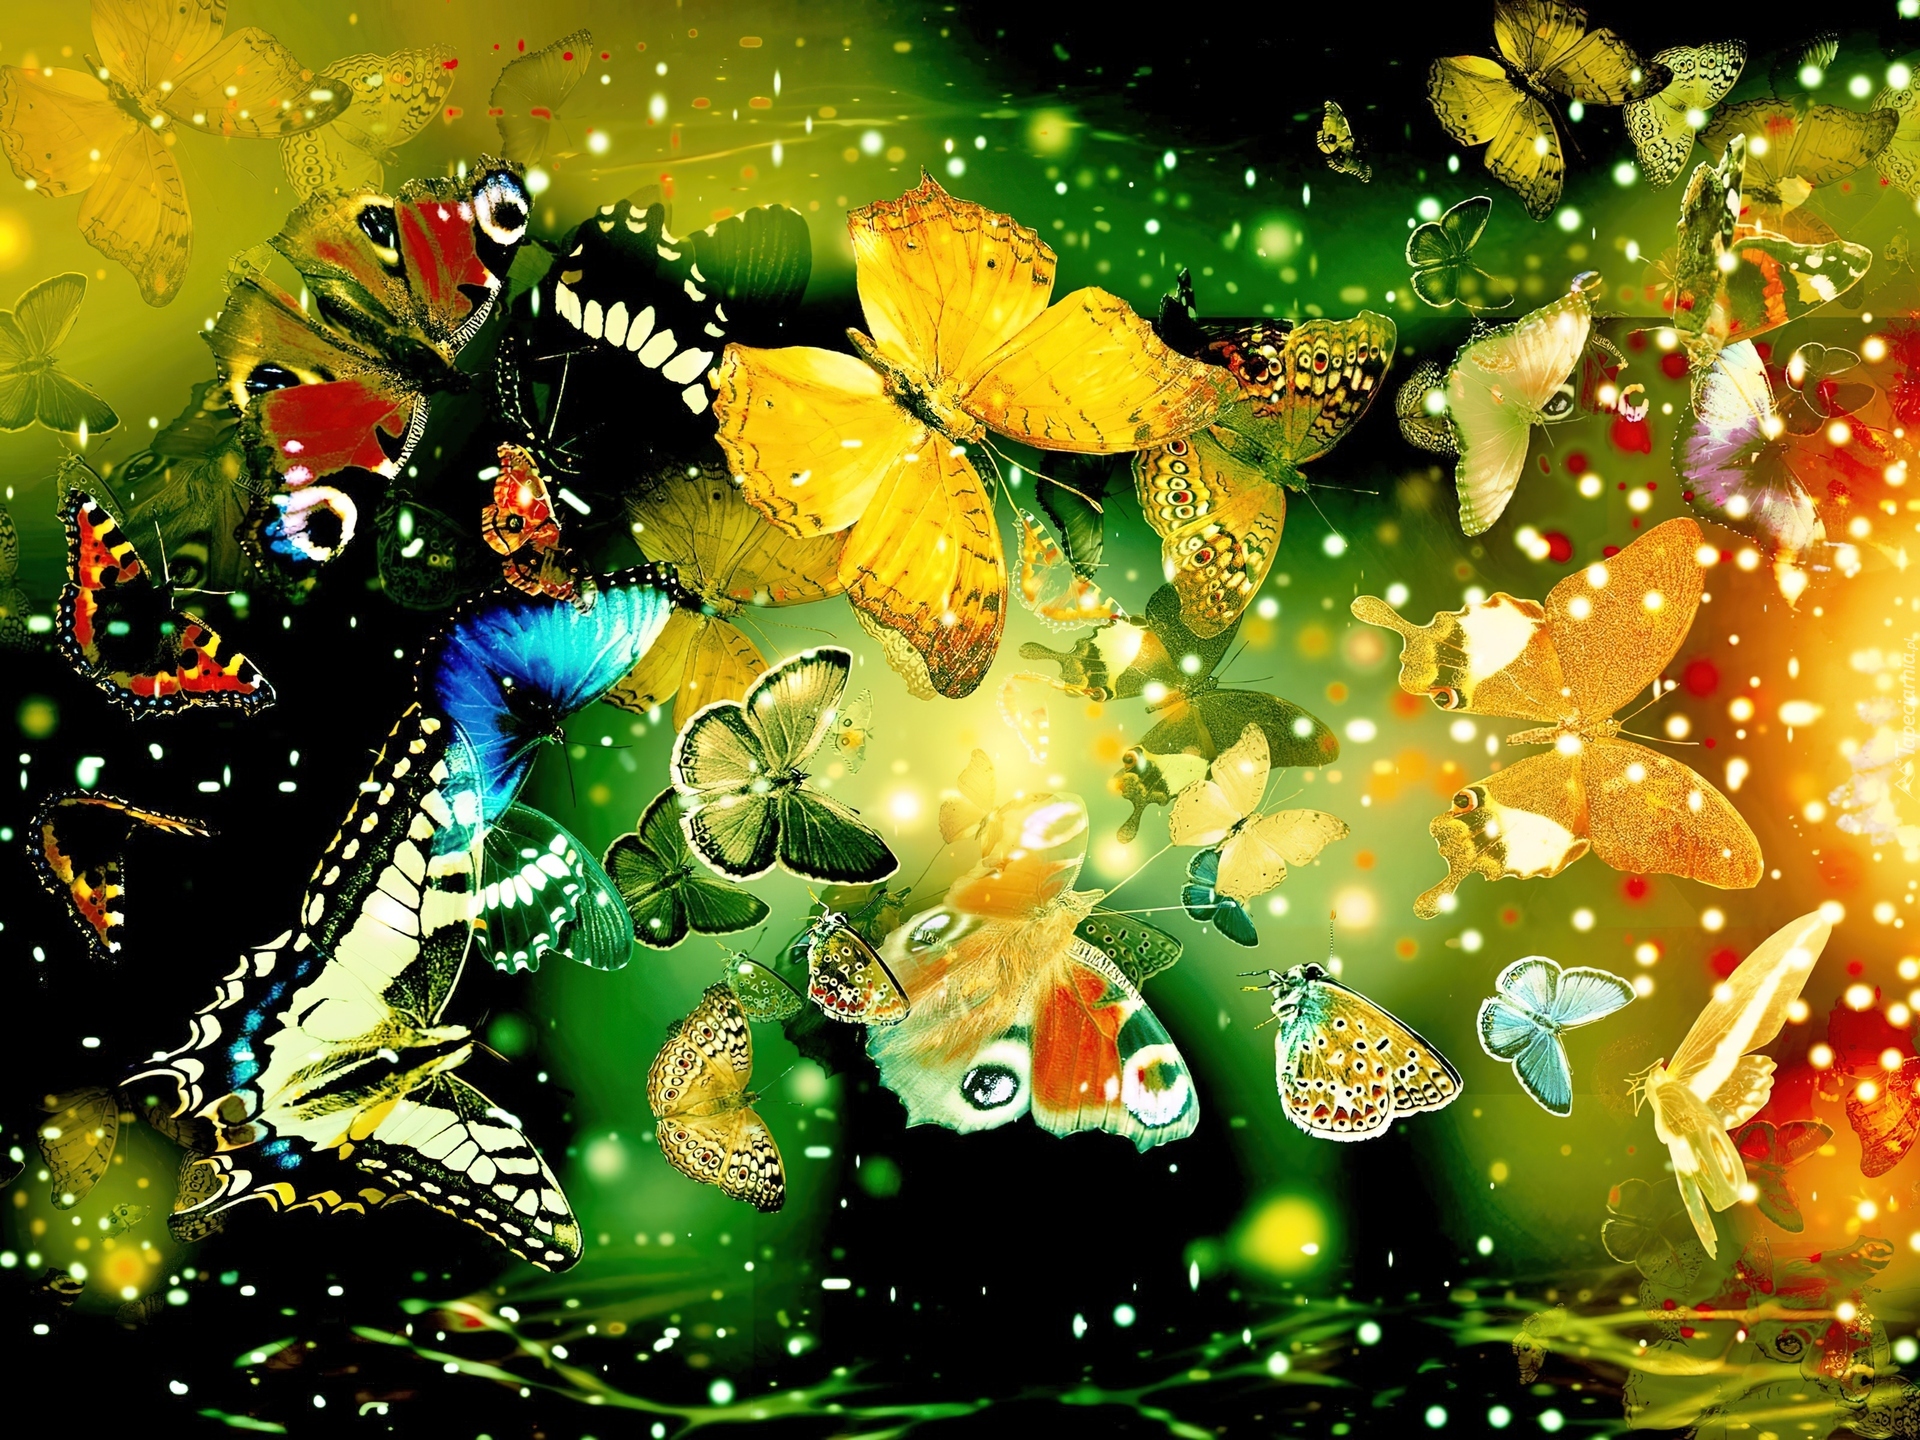 Красивые картинки на заставку экрана телефона. Картины бабочек красивых. Яркие картинки на рабочий стол. Картинки на рабочий стол бабочки. Много бабочек.